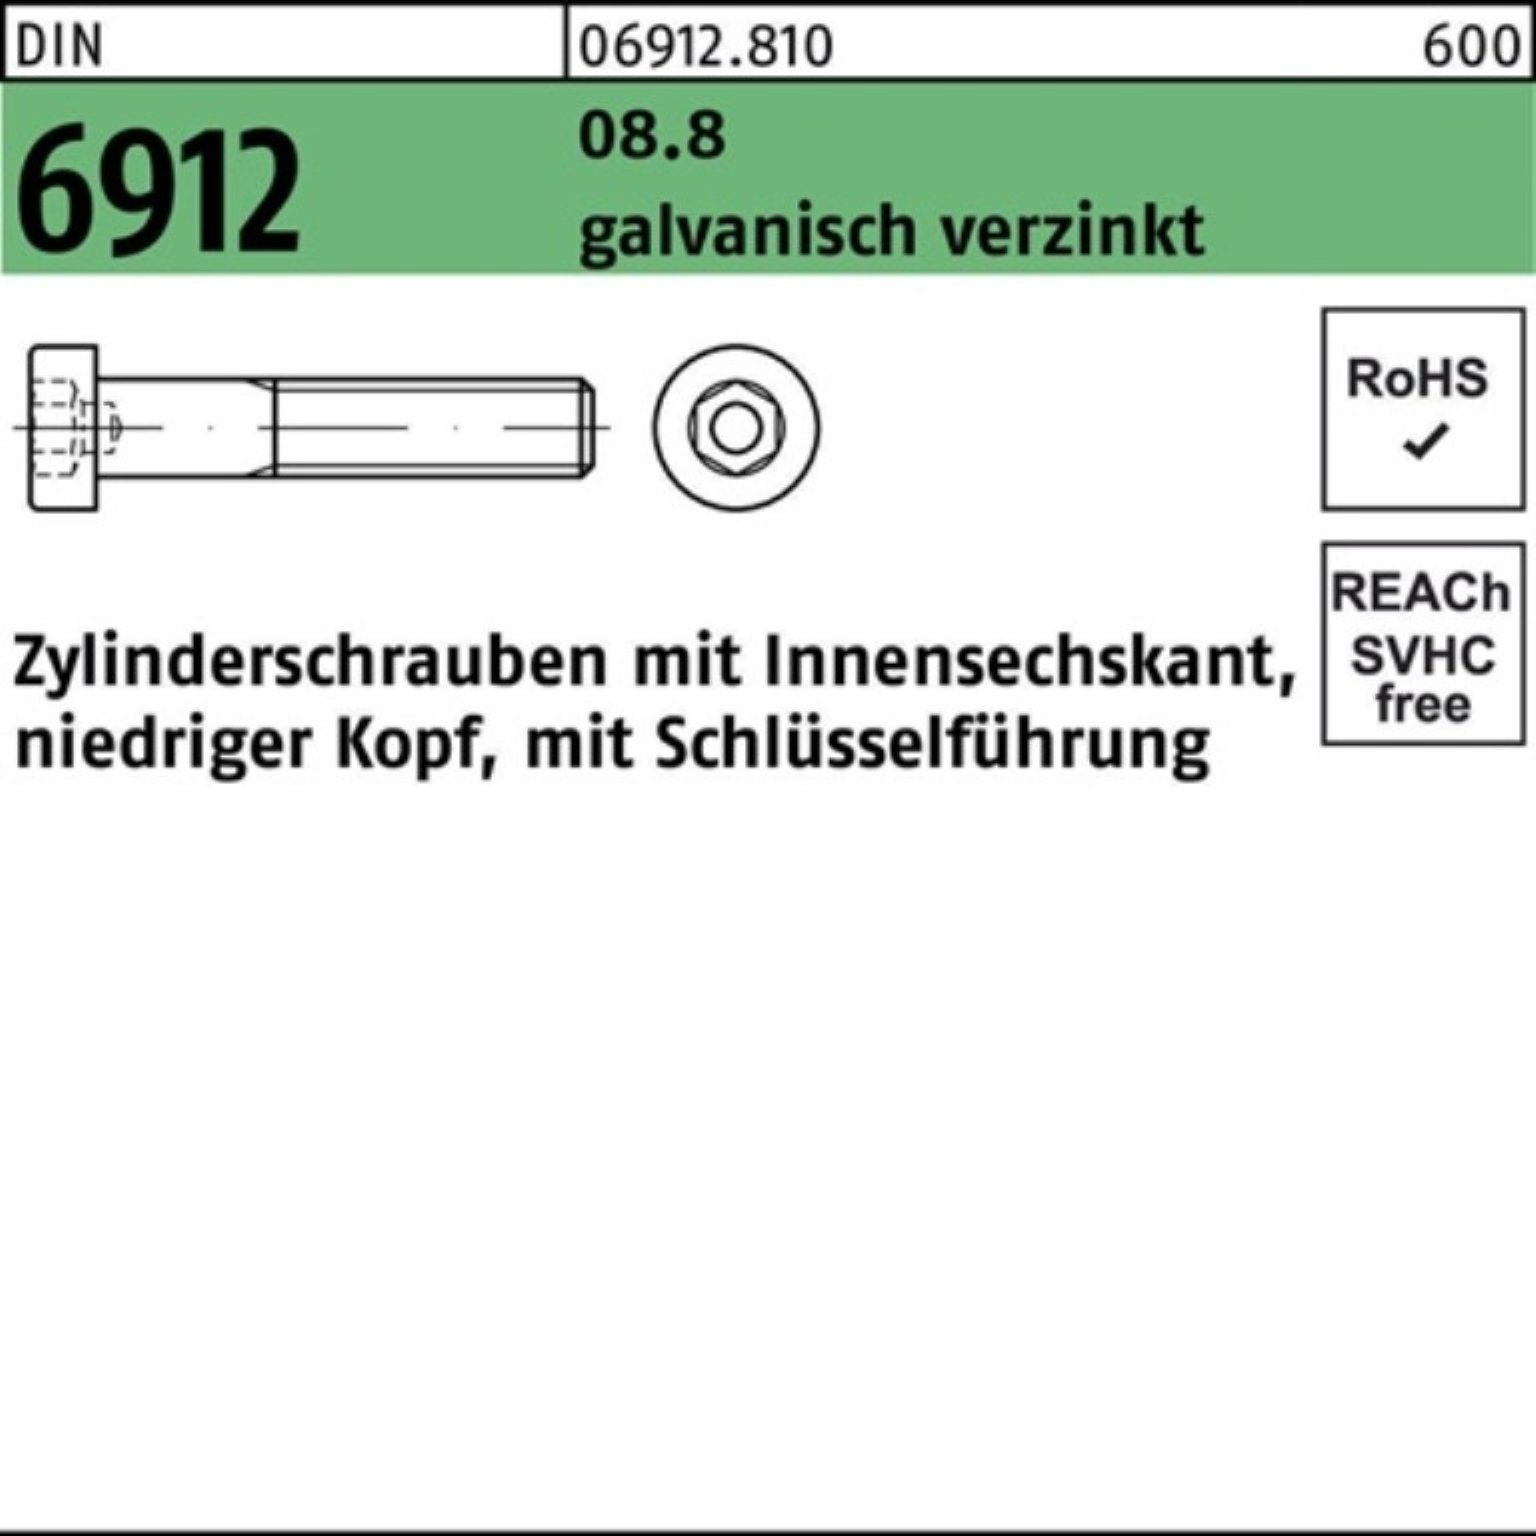 Reyher Zylinderschraube 200er Pack Zylinderschraube 20 Innen-6kt M6x35 6912 DIN 8.8 galv.verz